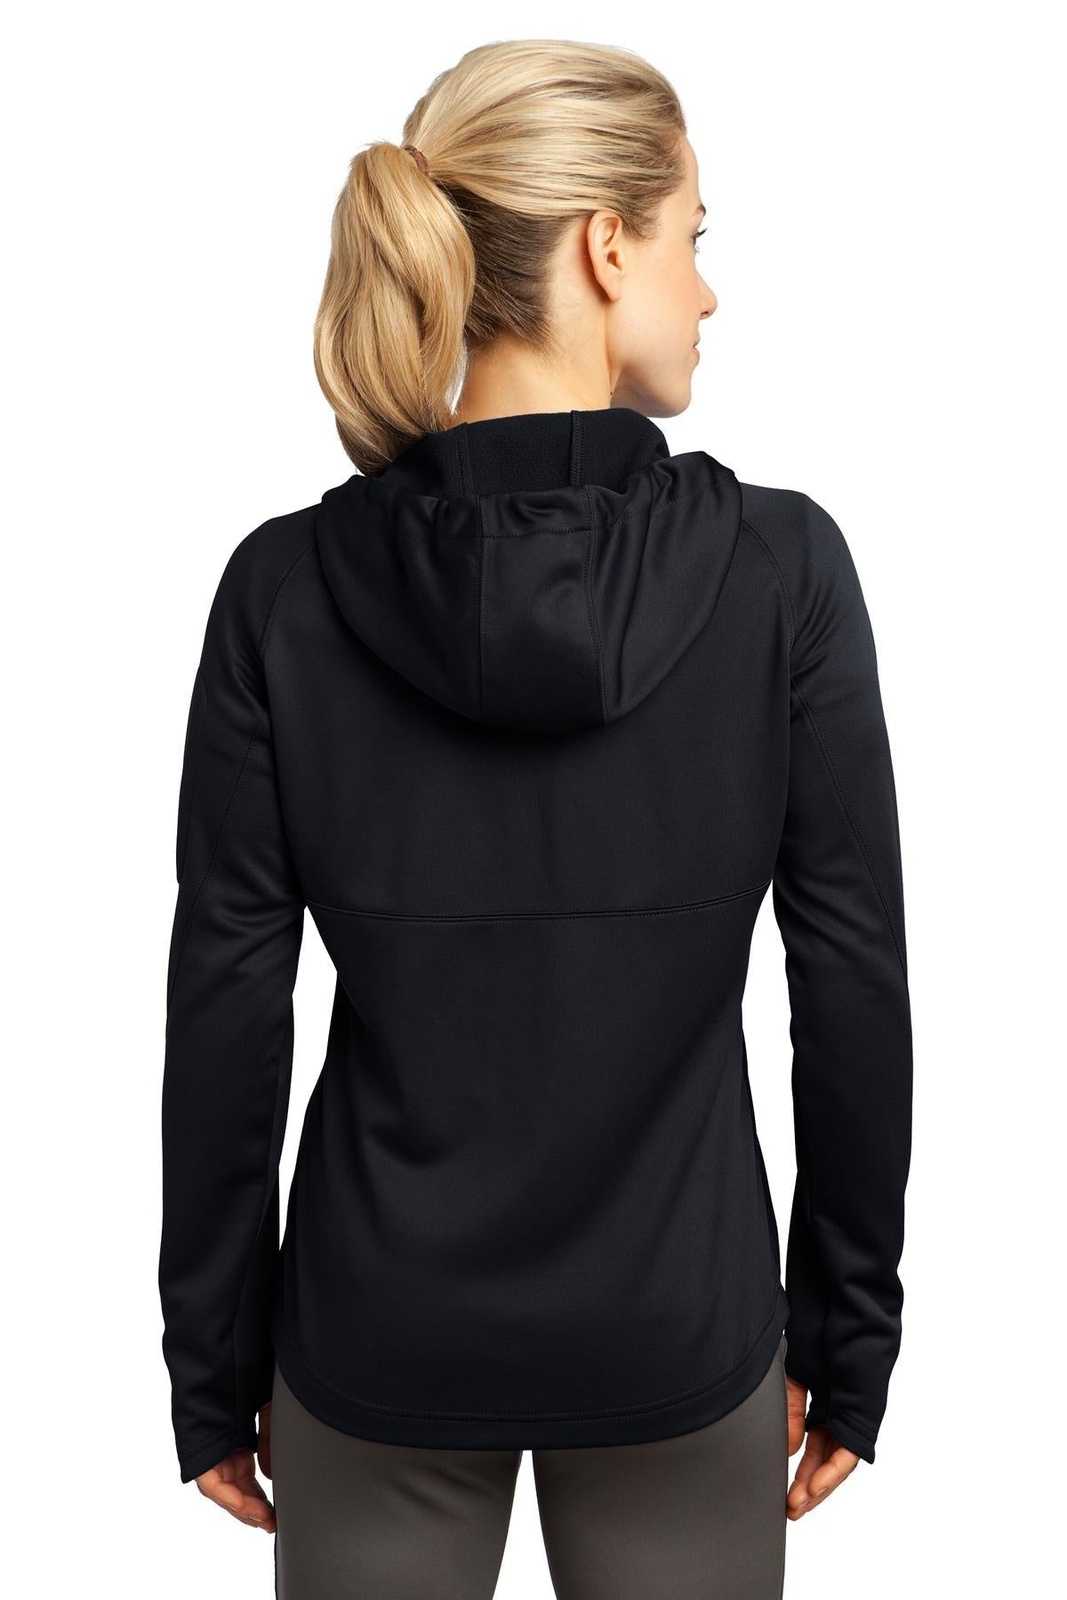 Sport-Tek L248 Ladies Tech Fleece Full-Zip Hooded Jacket - Black - HIT a Double - 2